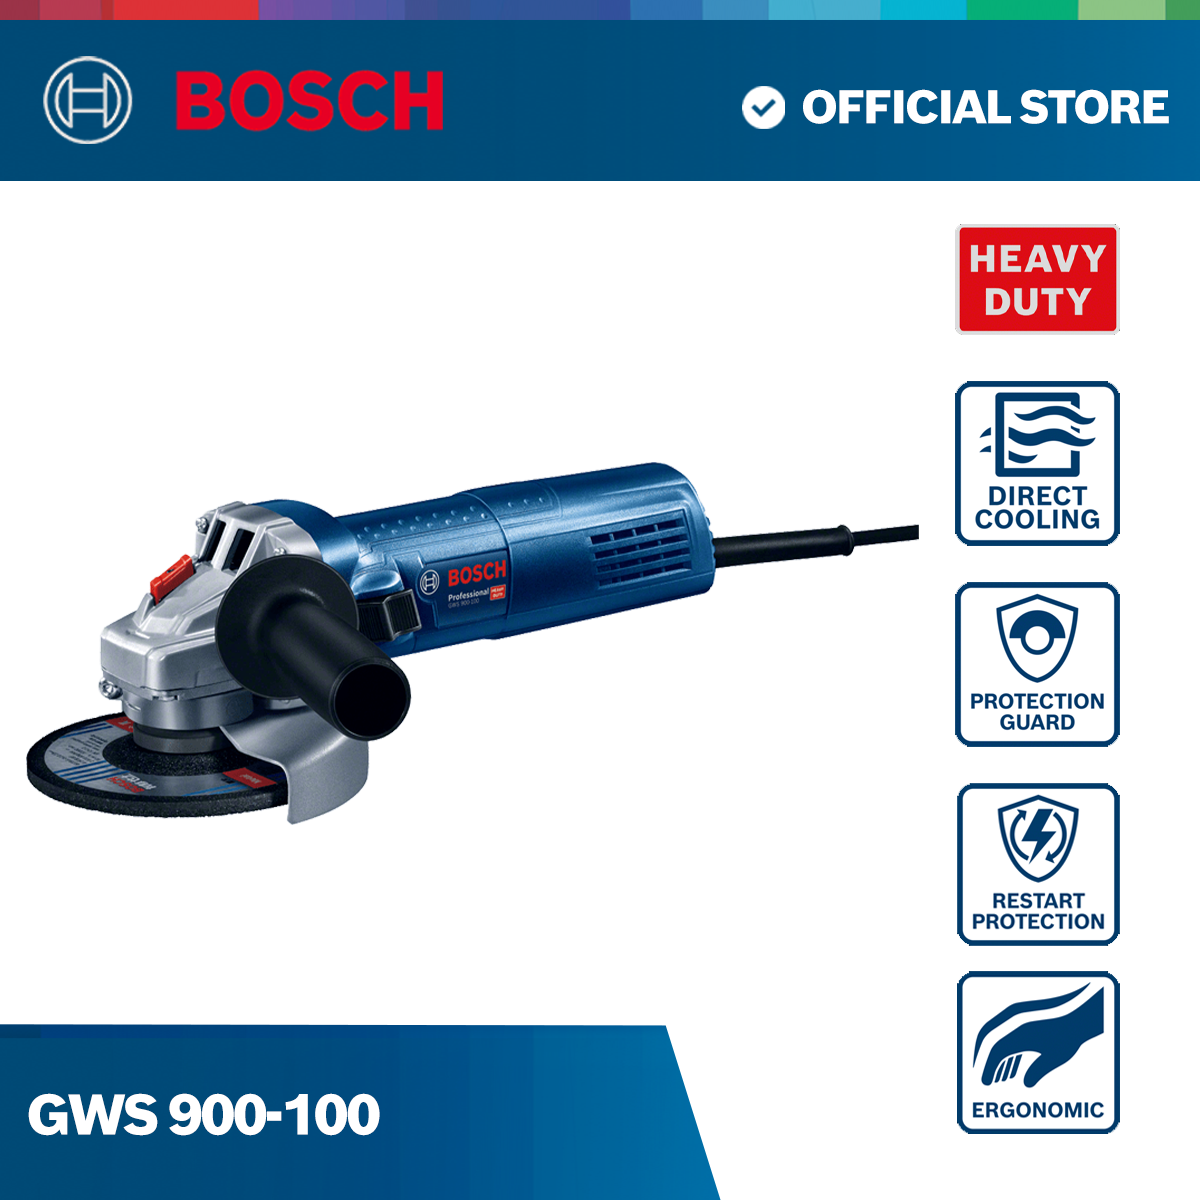 GWS 900-100